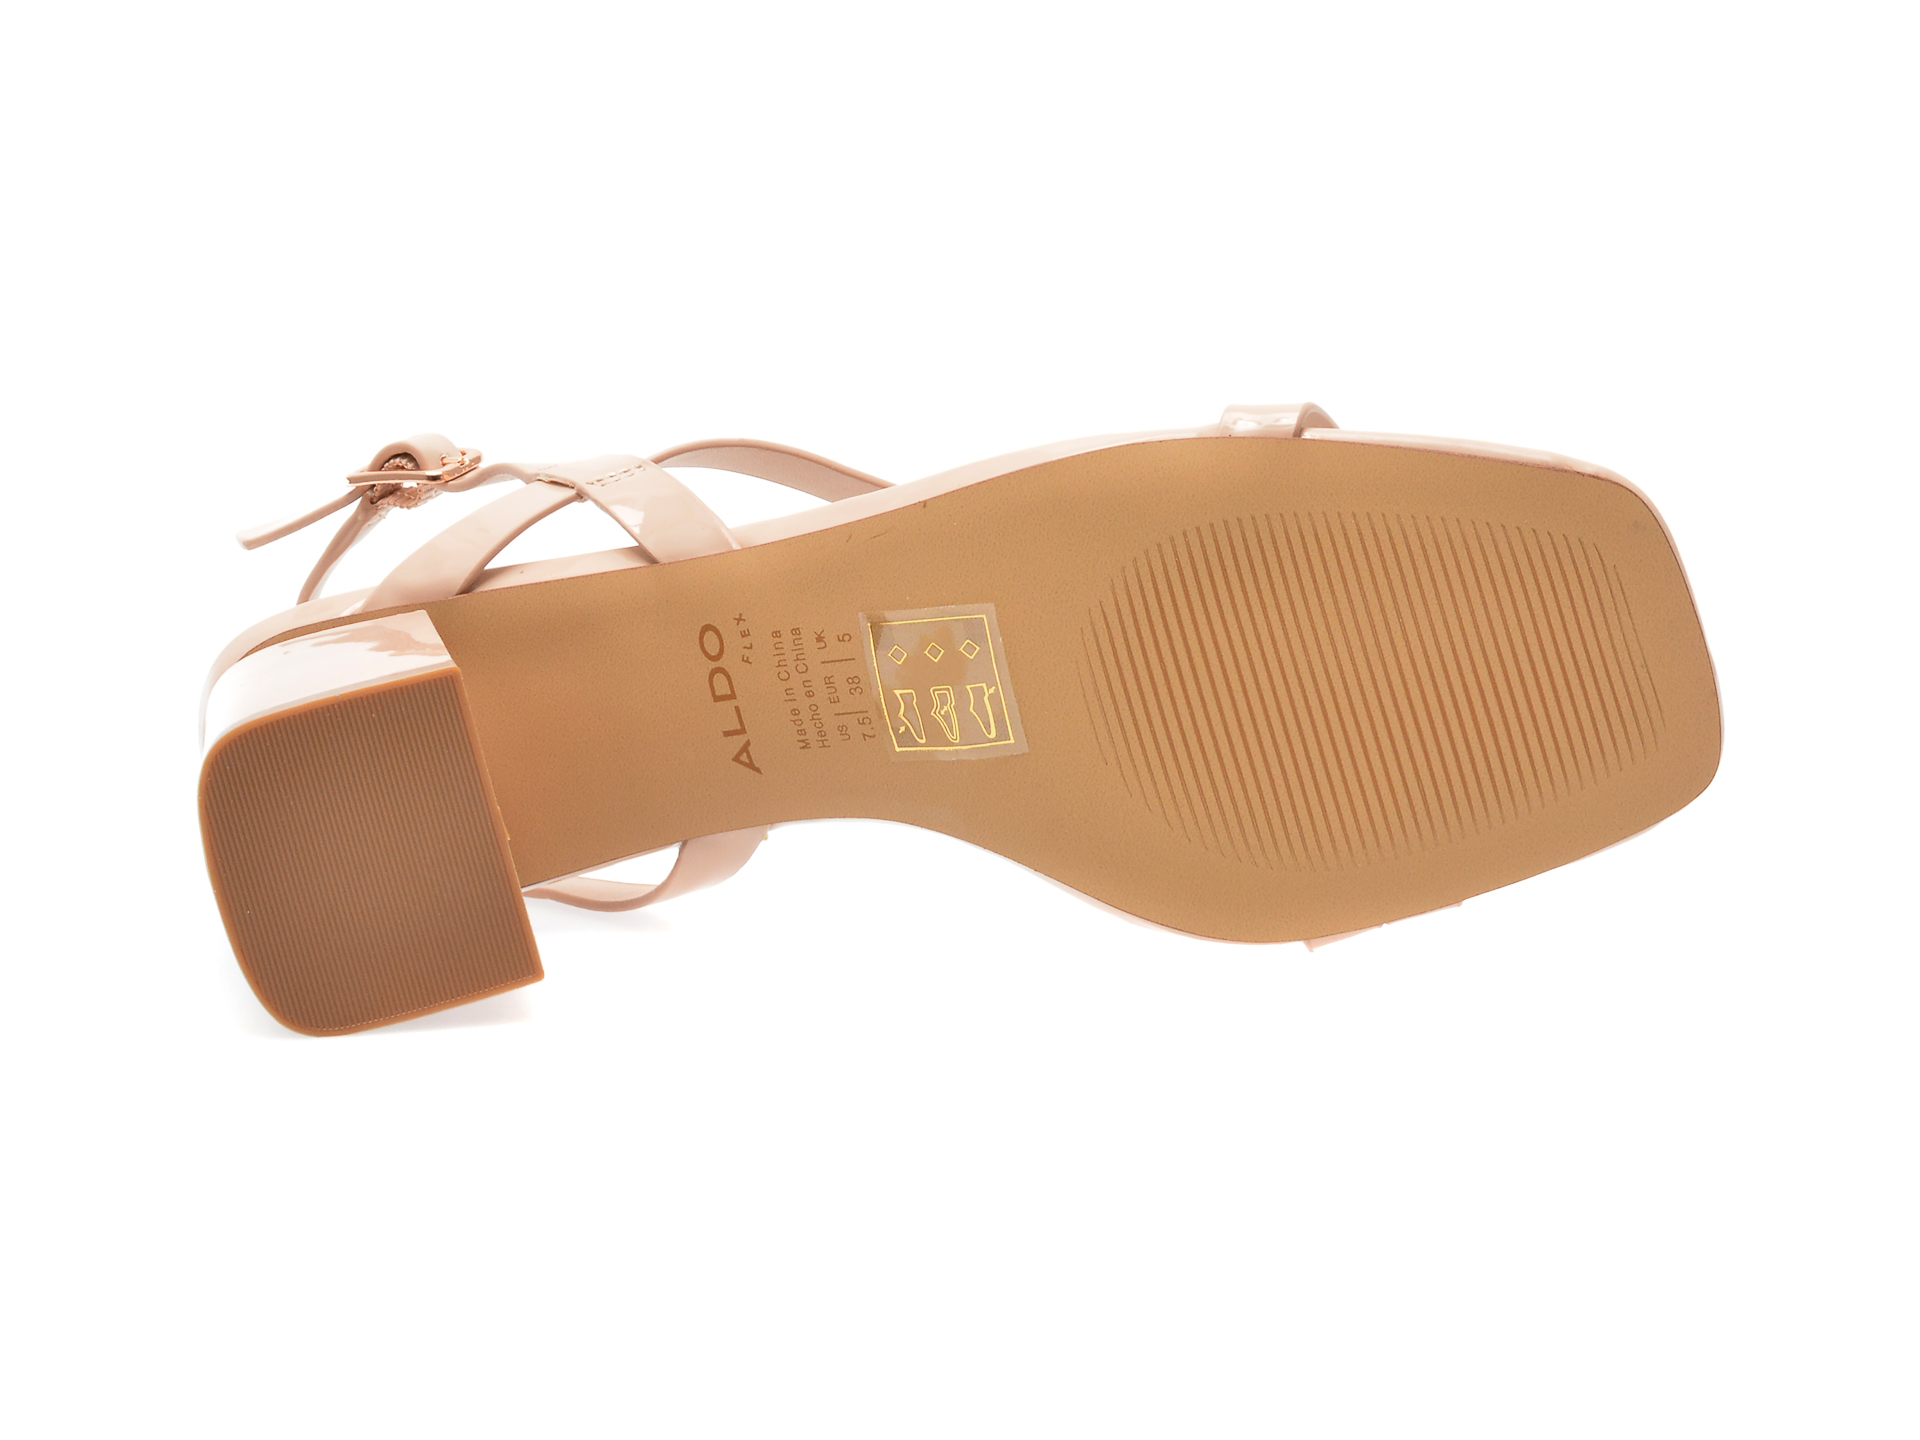 Sandale ALDO nude, SHENNA270, din piele ecologica